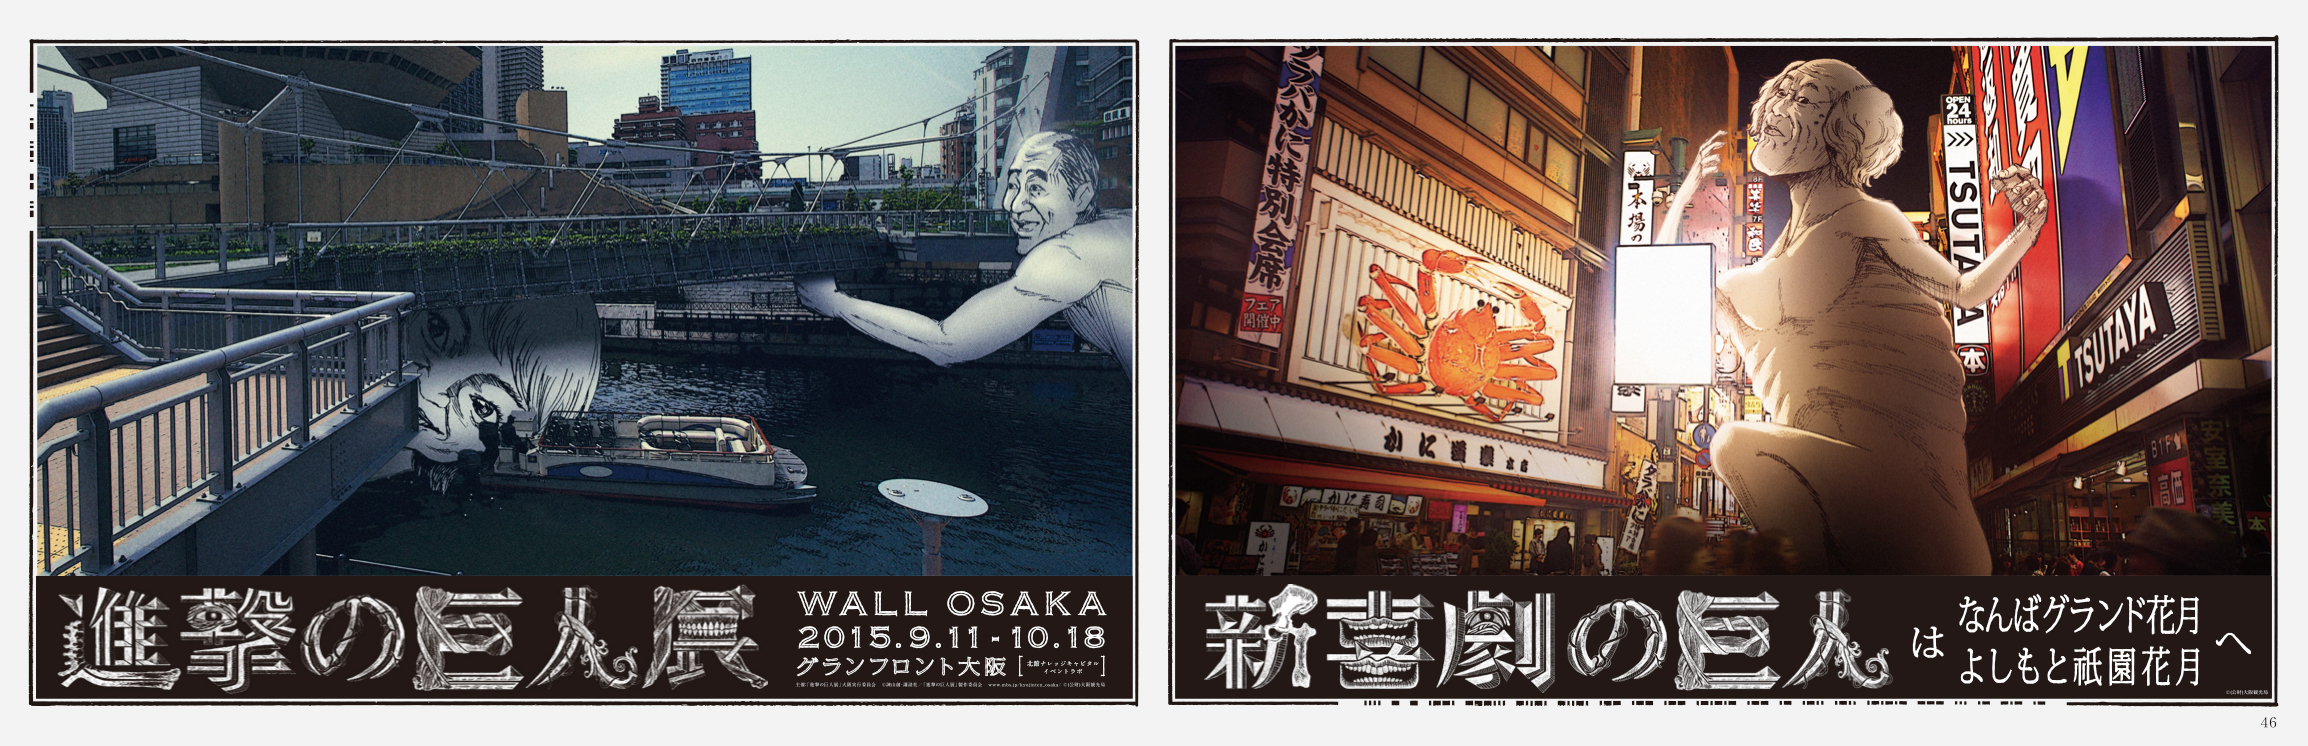 「進撃の巨人展 WALL OSAKA」×「吉本新喜劇」1